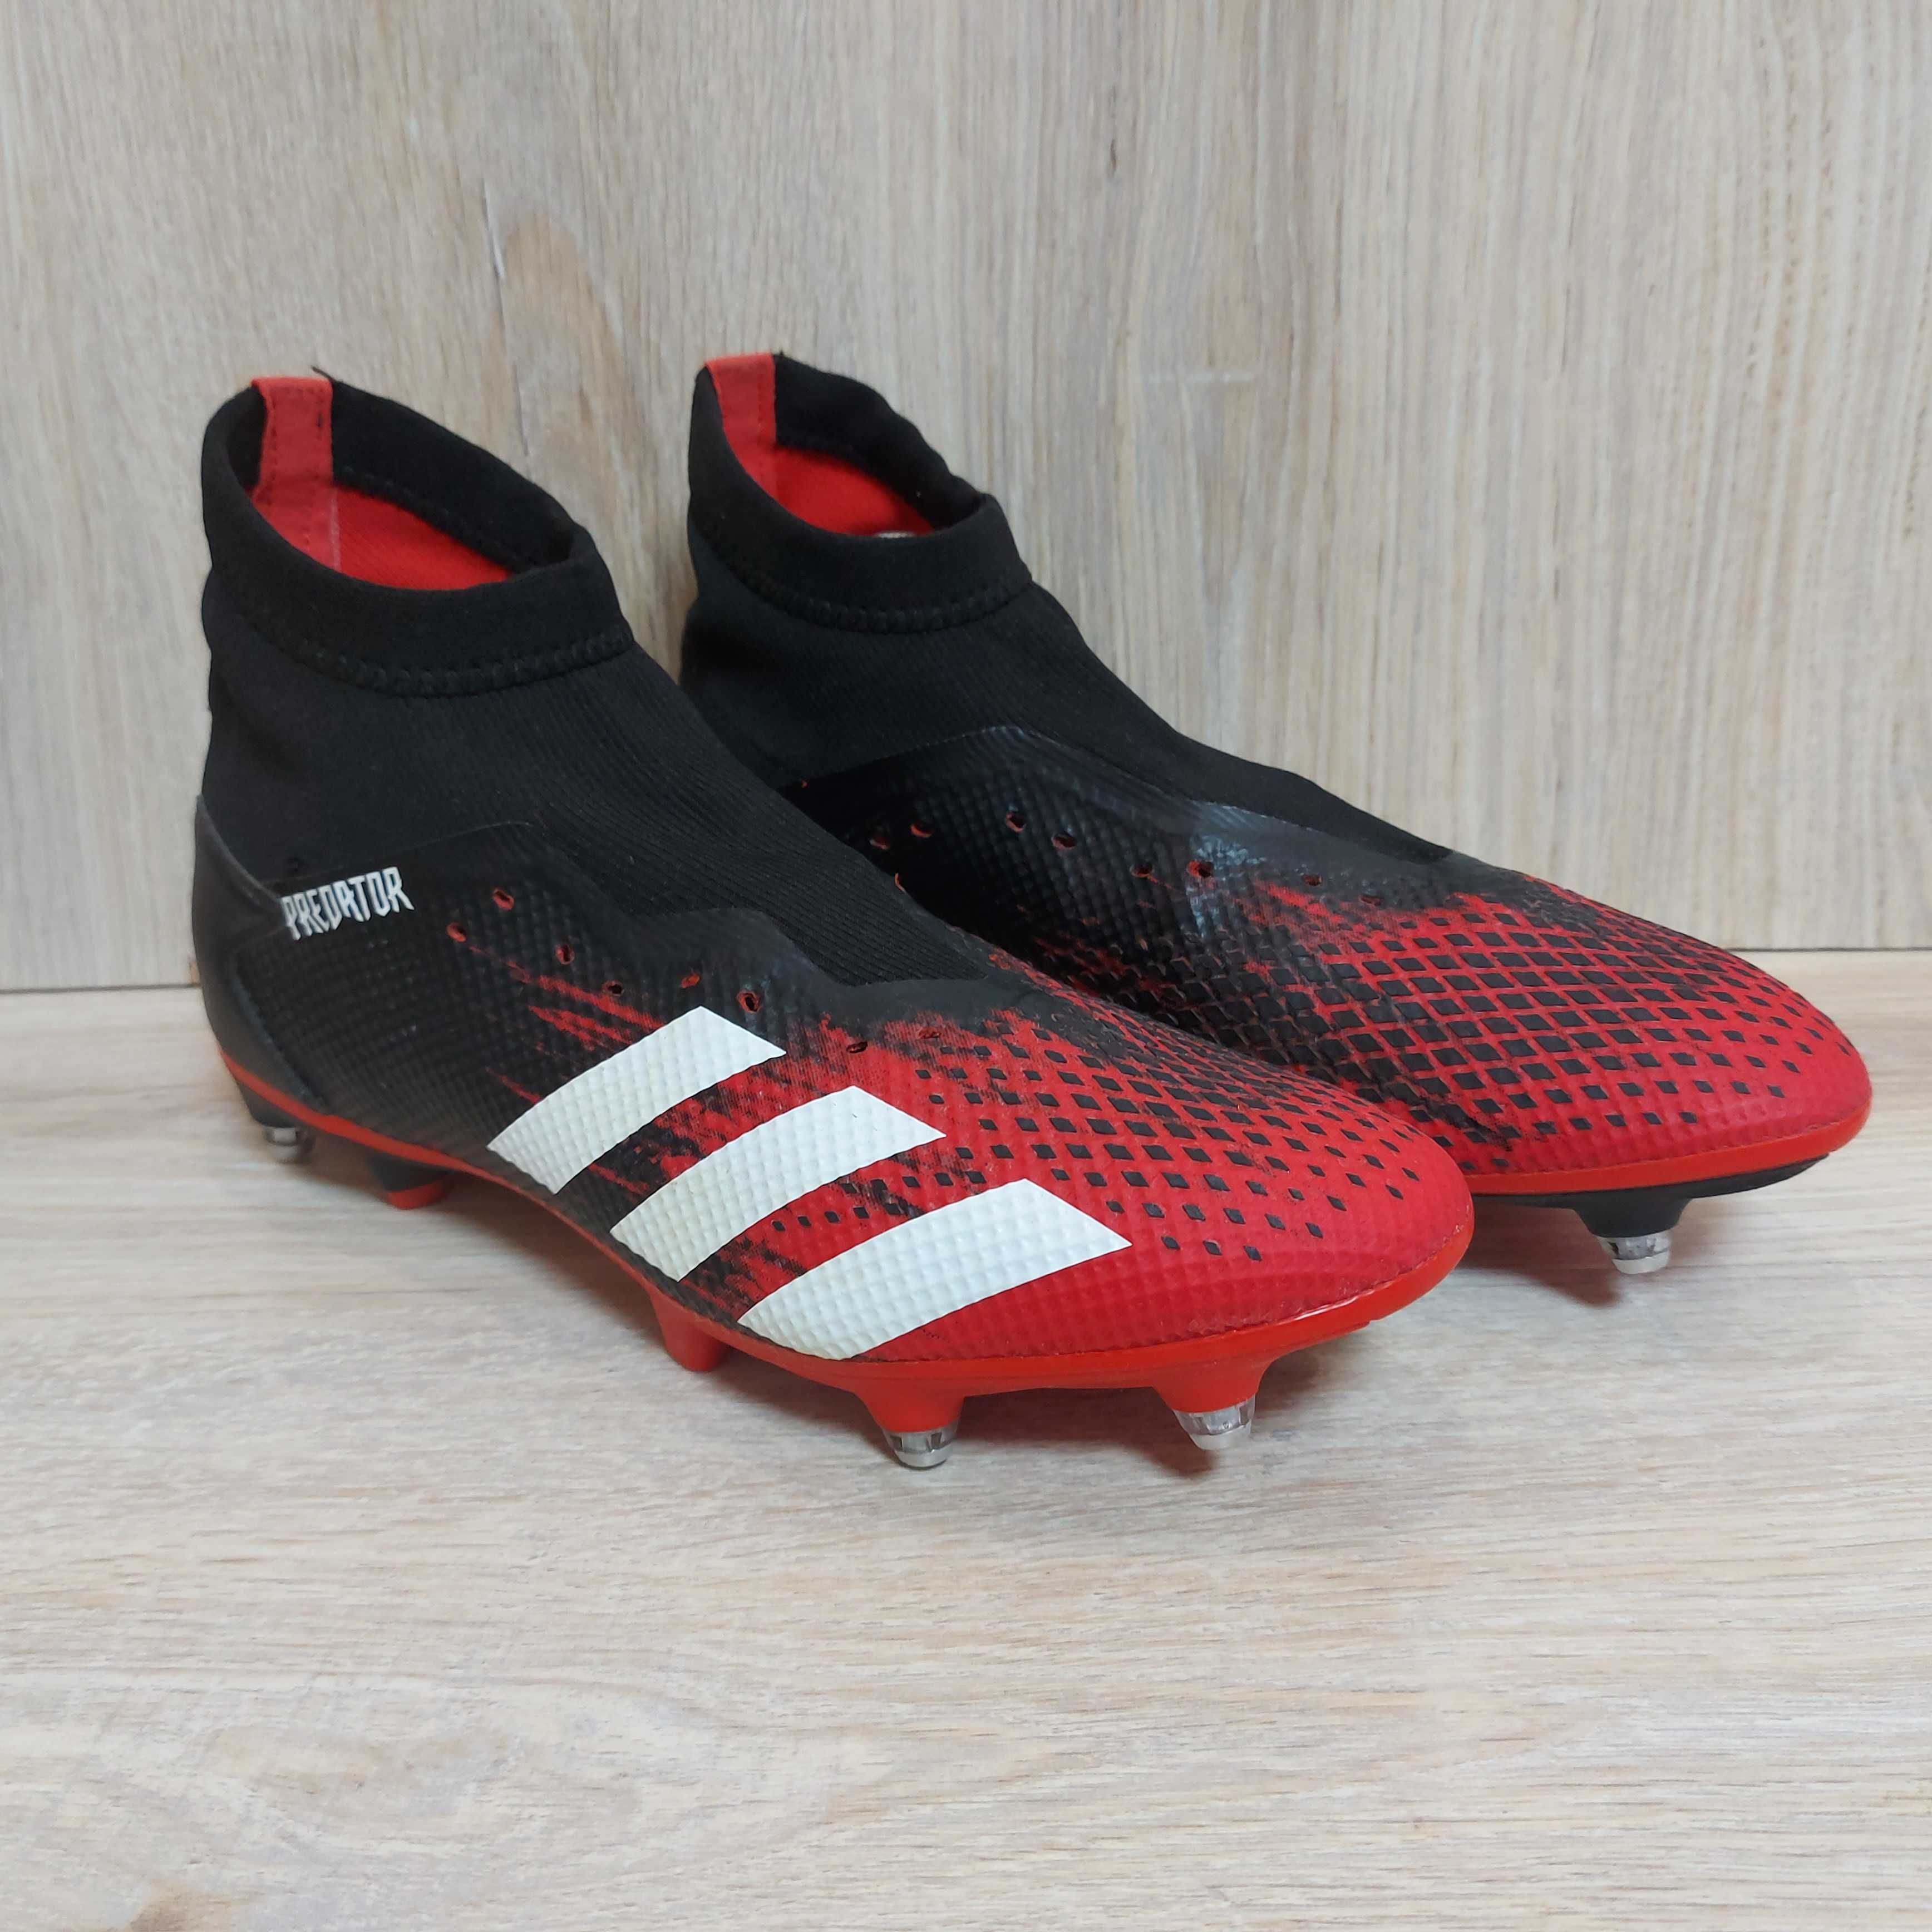 Футбольные бутсы с носком Adidas Predator 20.3 SG оригинал